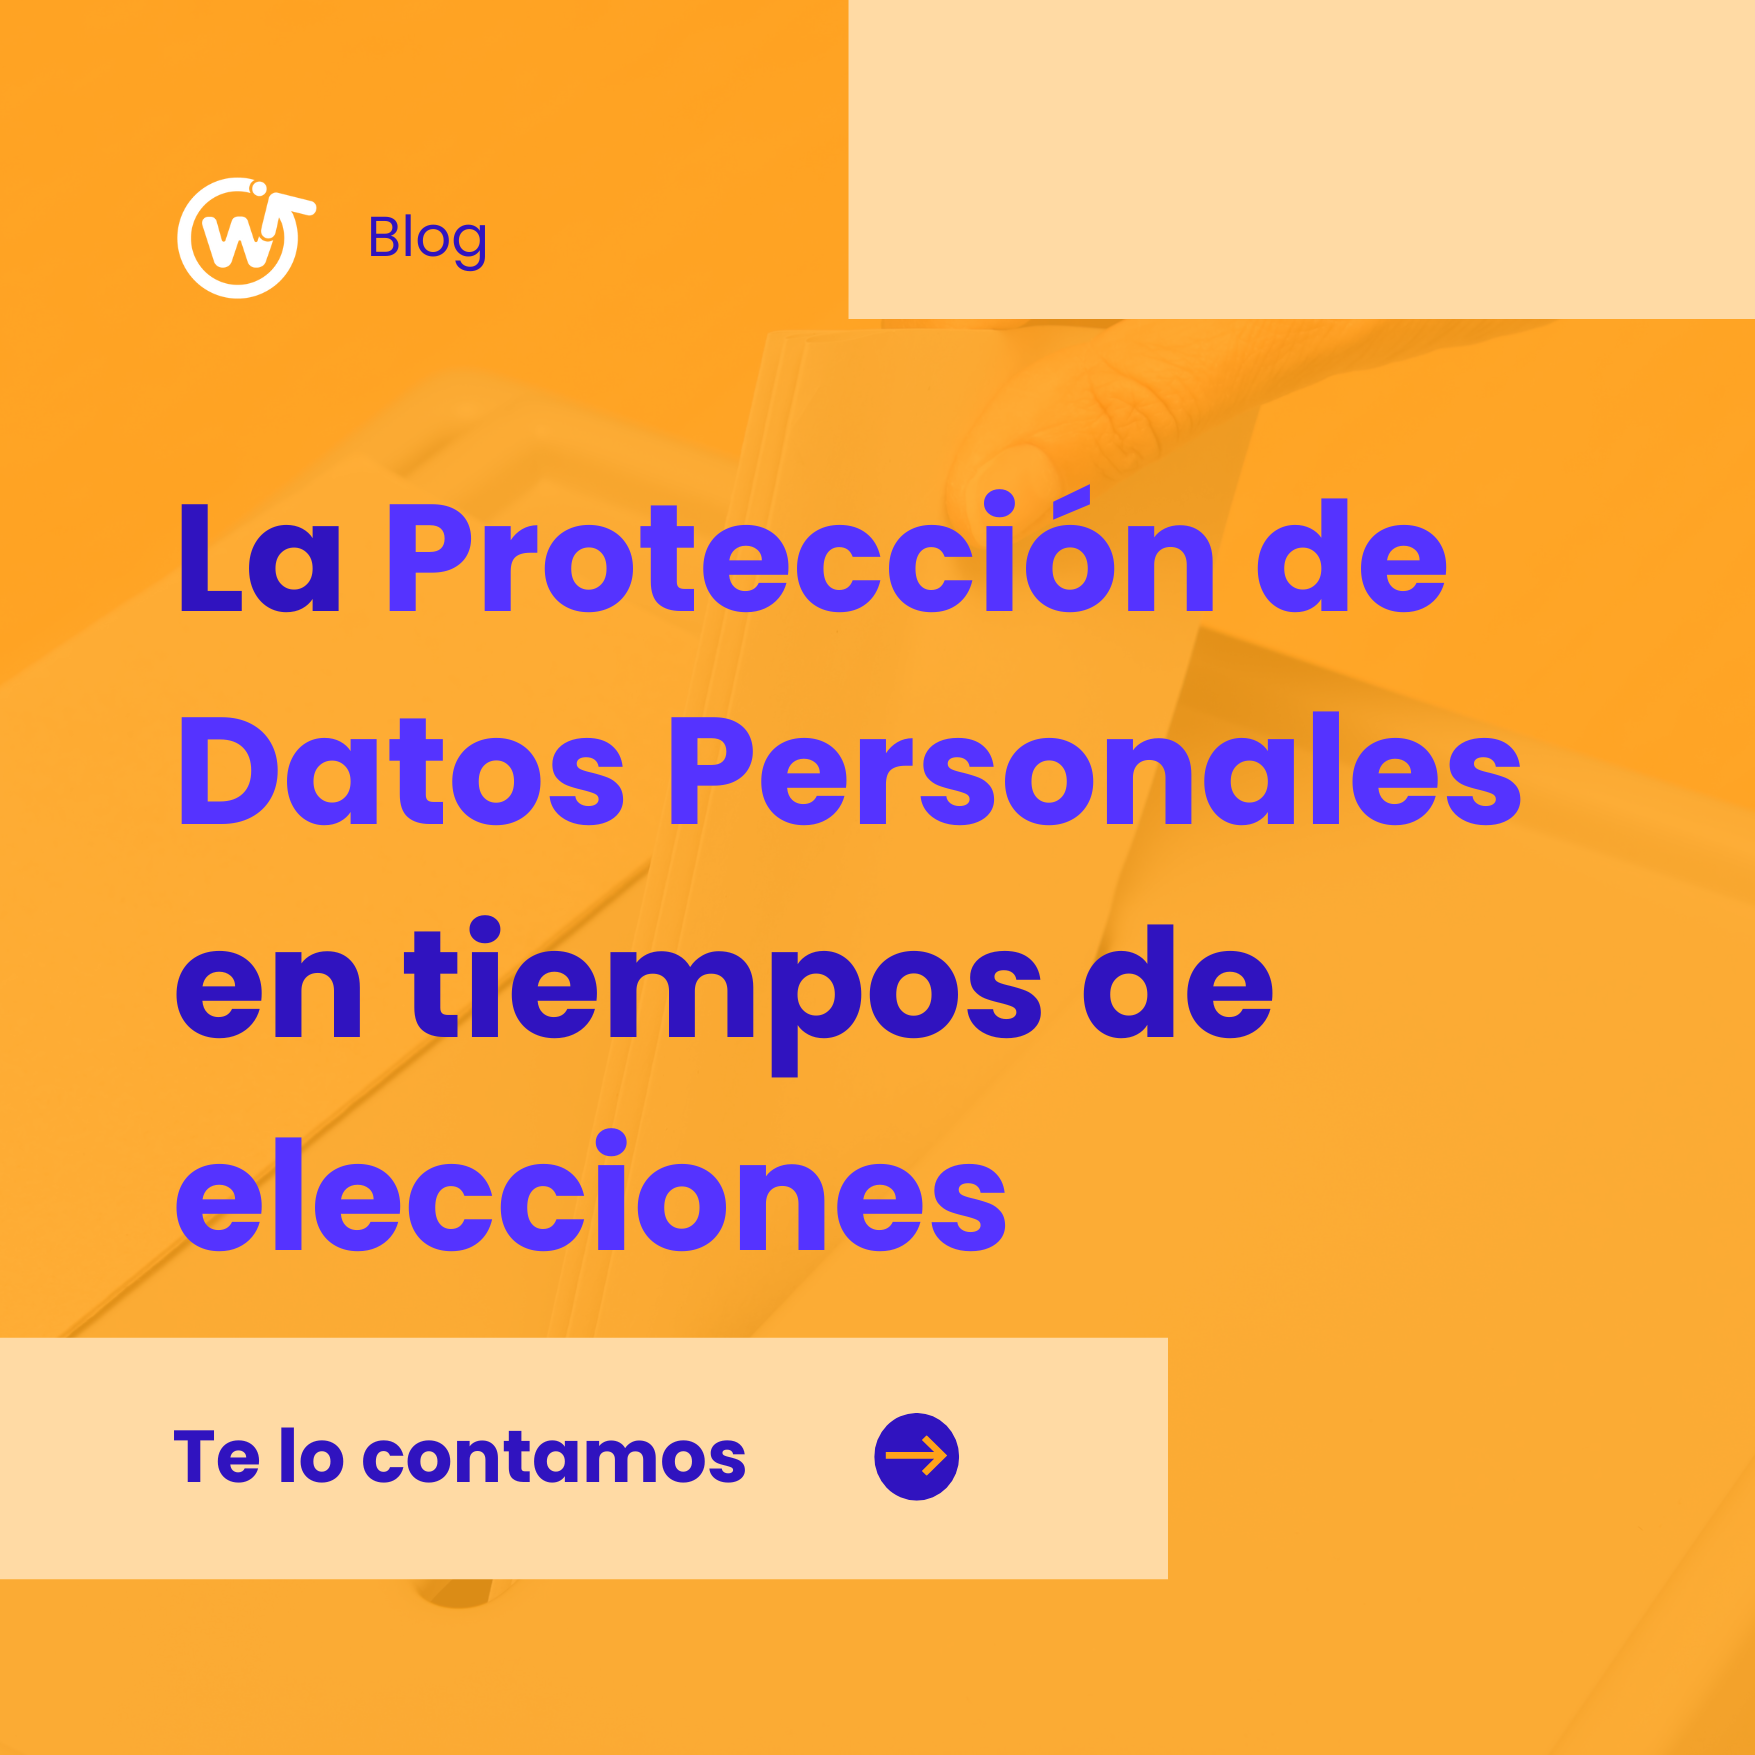 La protección de datos personales en tiempos de elecciones